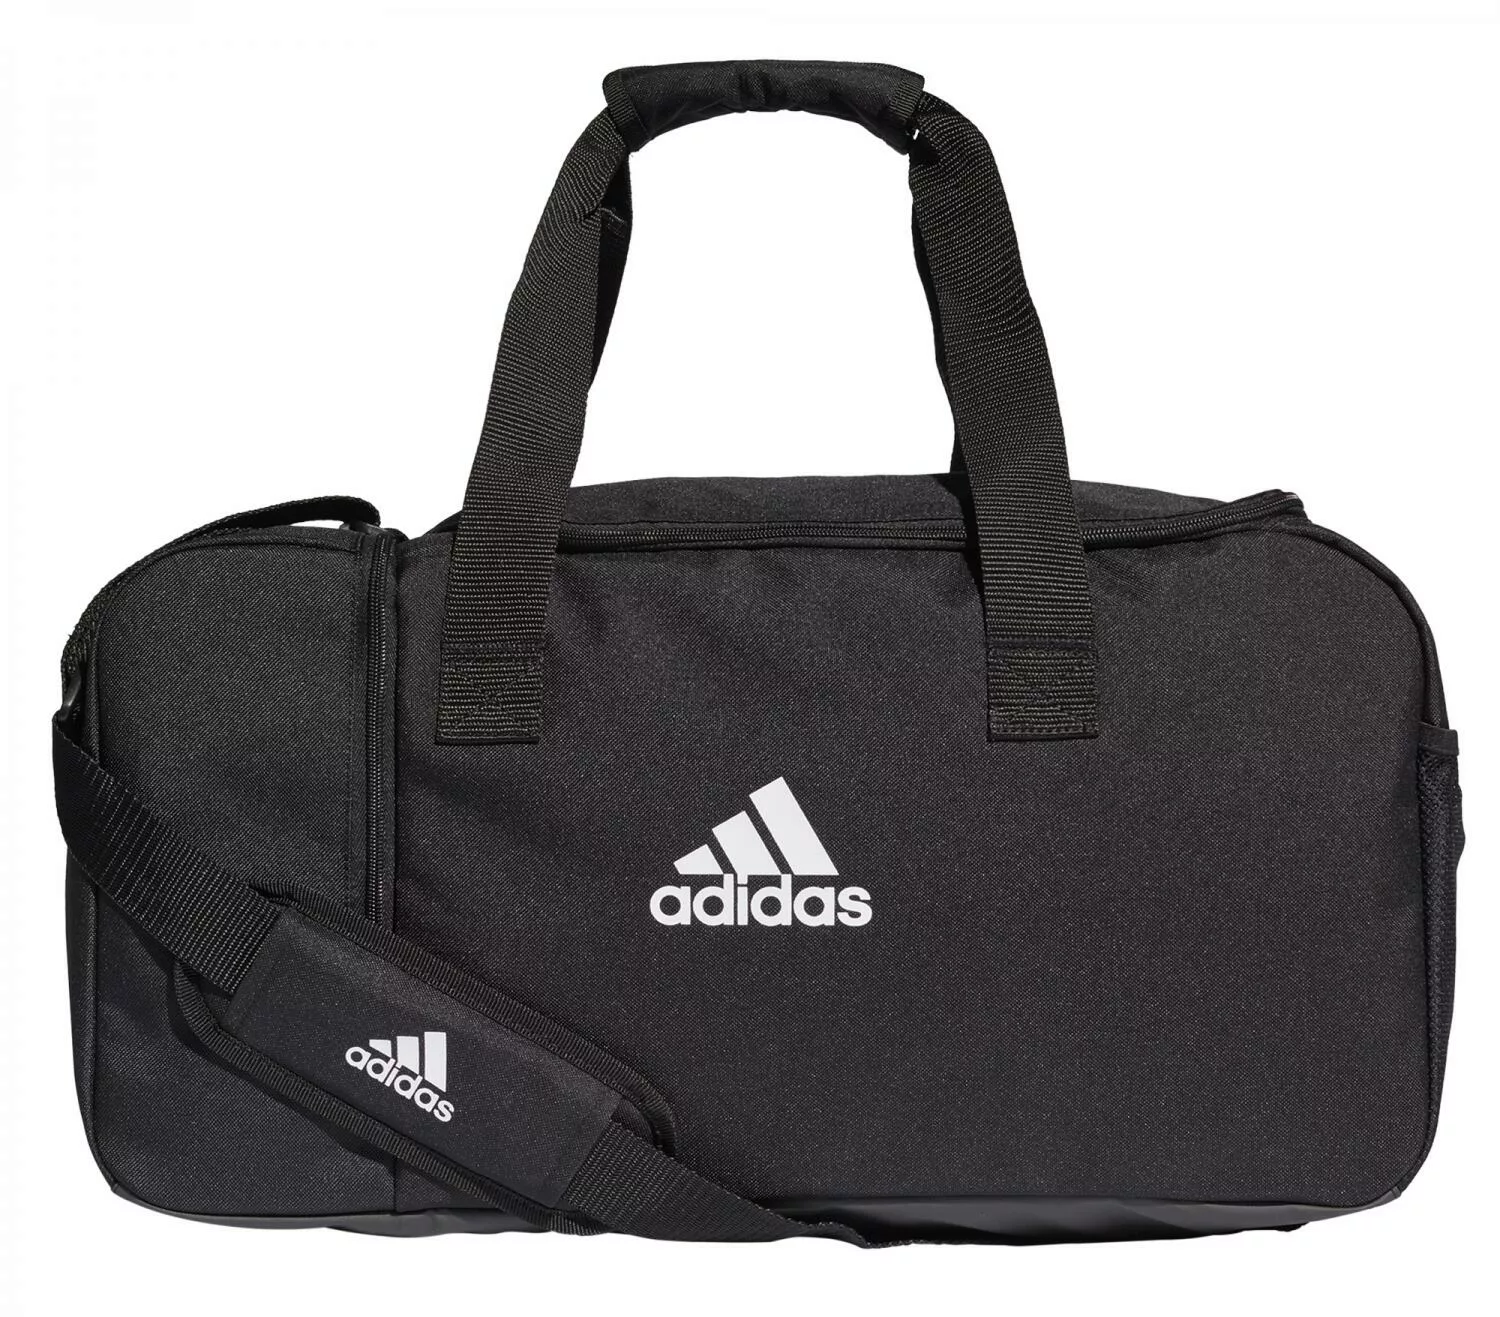 adidas Tiro Duffelbag Sporttasche S (Farbe: black/white) günstig online kaufen